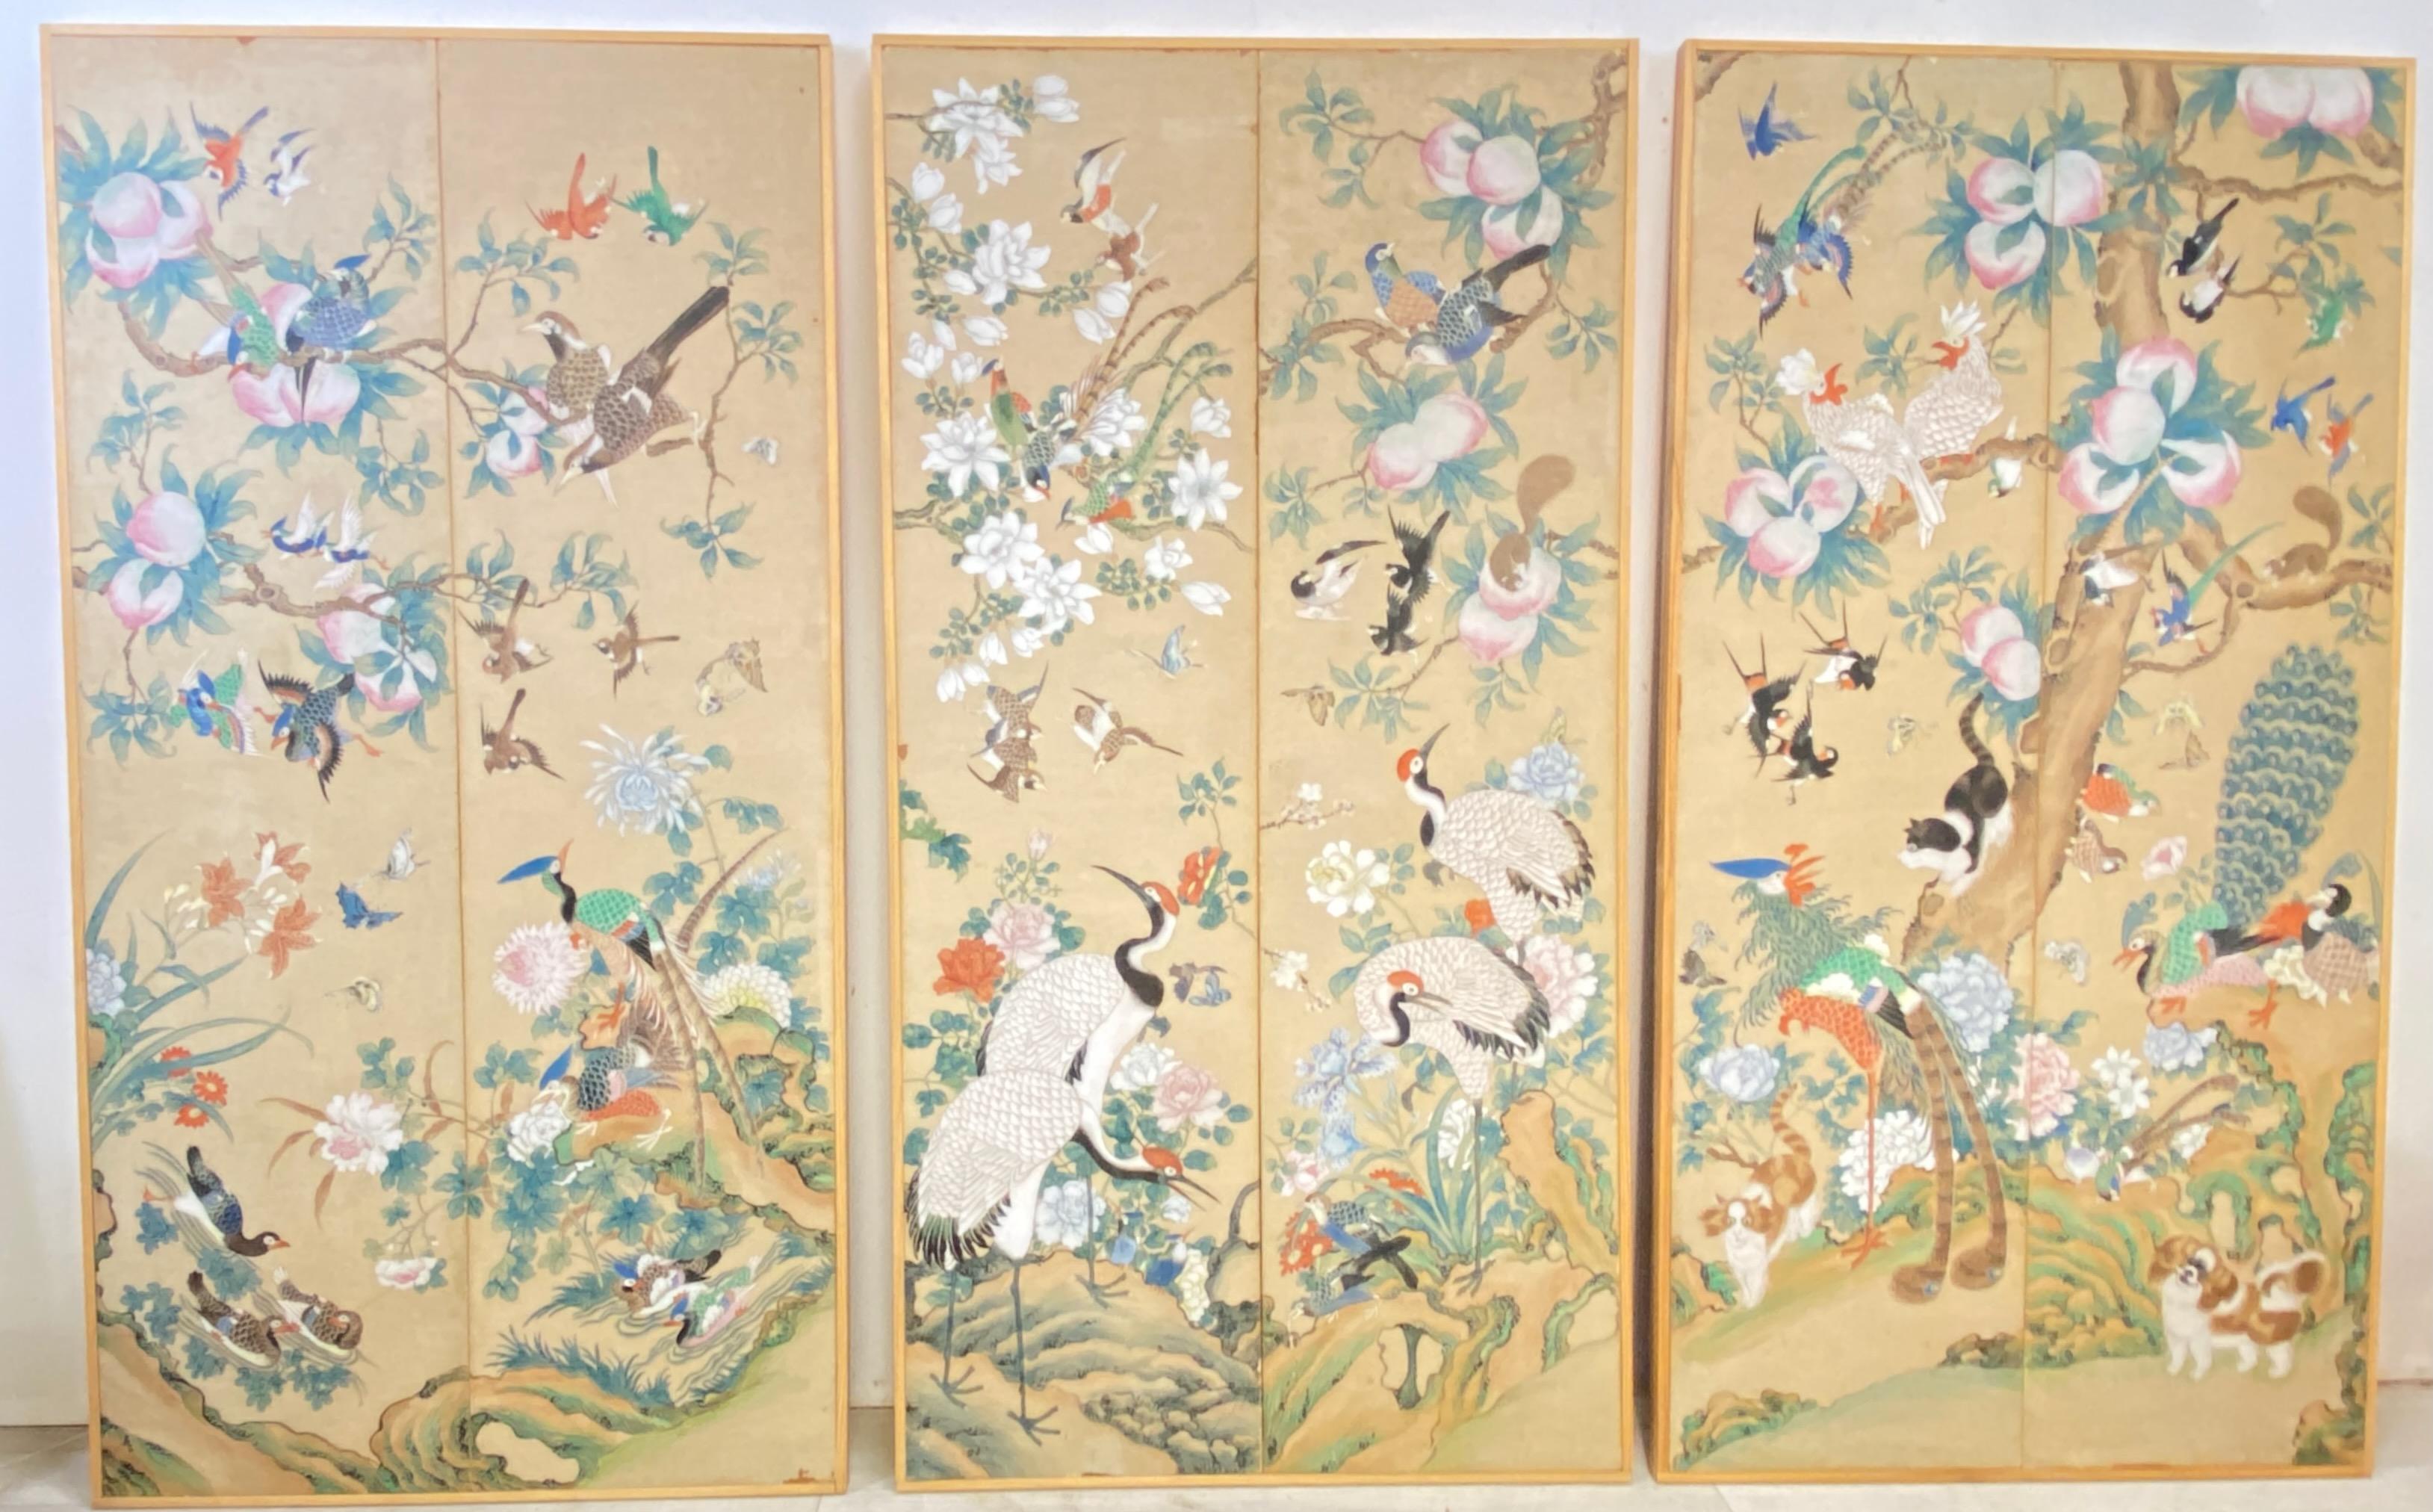 Ein Satz von drei montierten handgemalten Tapetenbahnen in einfachen Holzrahmen.
Wunderschön und kunstvoll gemalte Szenen mit Vögeln, Blumen, Schmetterlingen, Katzen, Hunden, Eichhörnchen, Obst und Laub. 
Höchstwahrscheinlich war dies ursprünglich